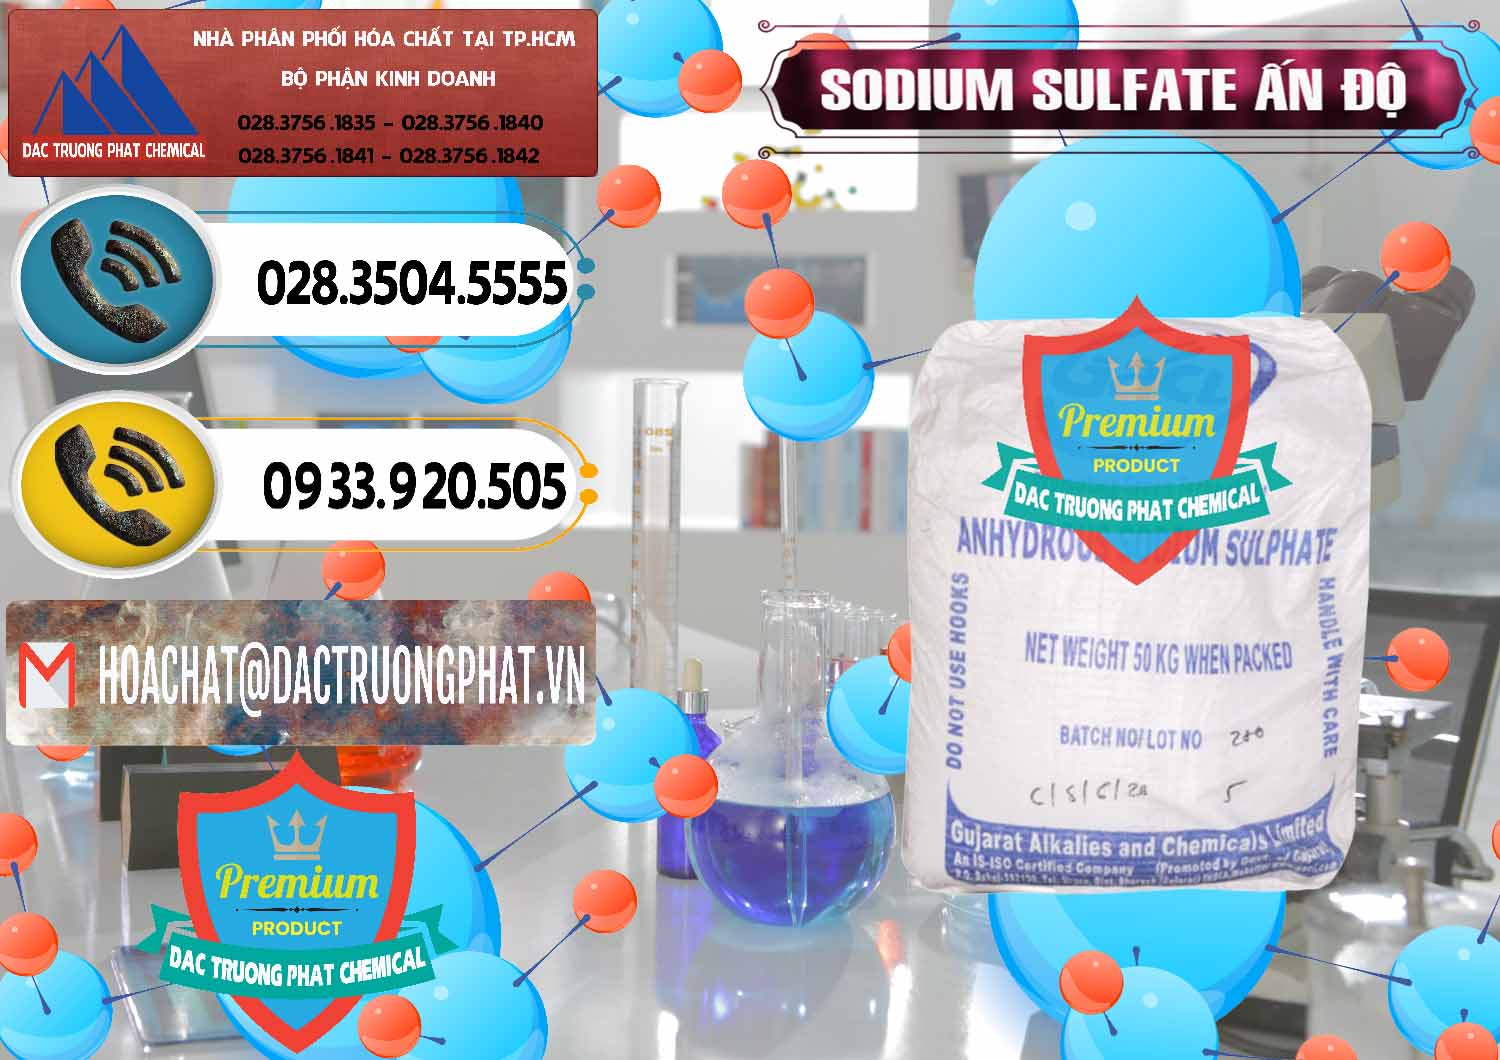 Chuyên bán & phân phối Sodium Sulphate - Muối Sunfat Na2SO4 GACL Ấn Độ India - 0461 - Công ty cung cấp và kinh doanh hóa chất tại TP.HCM - hoachatdetnhuom.vn